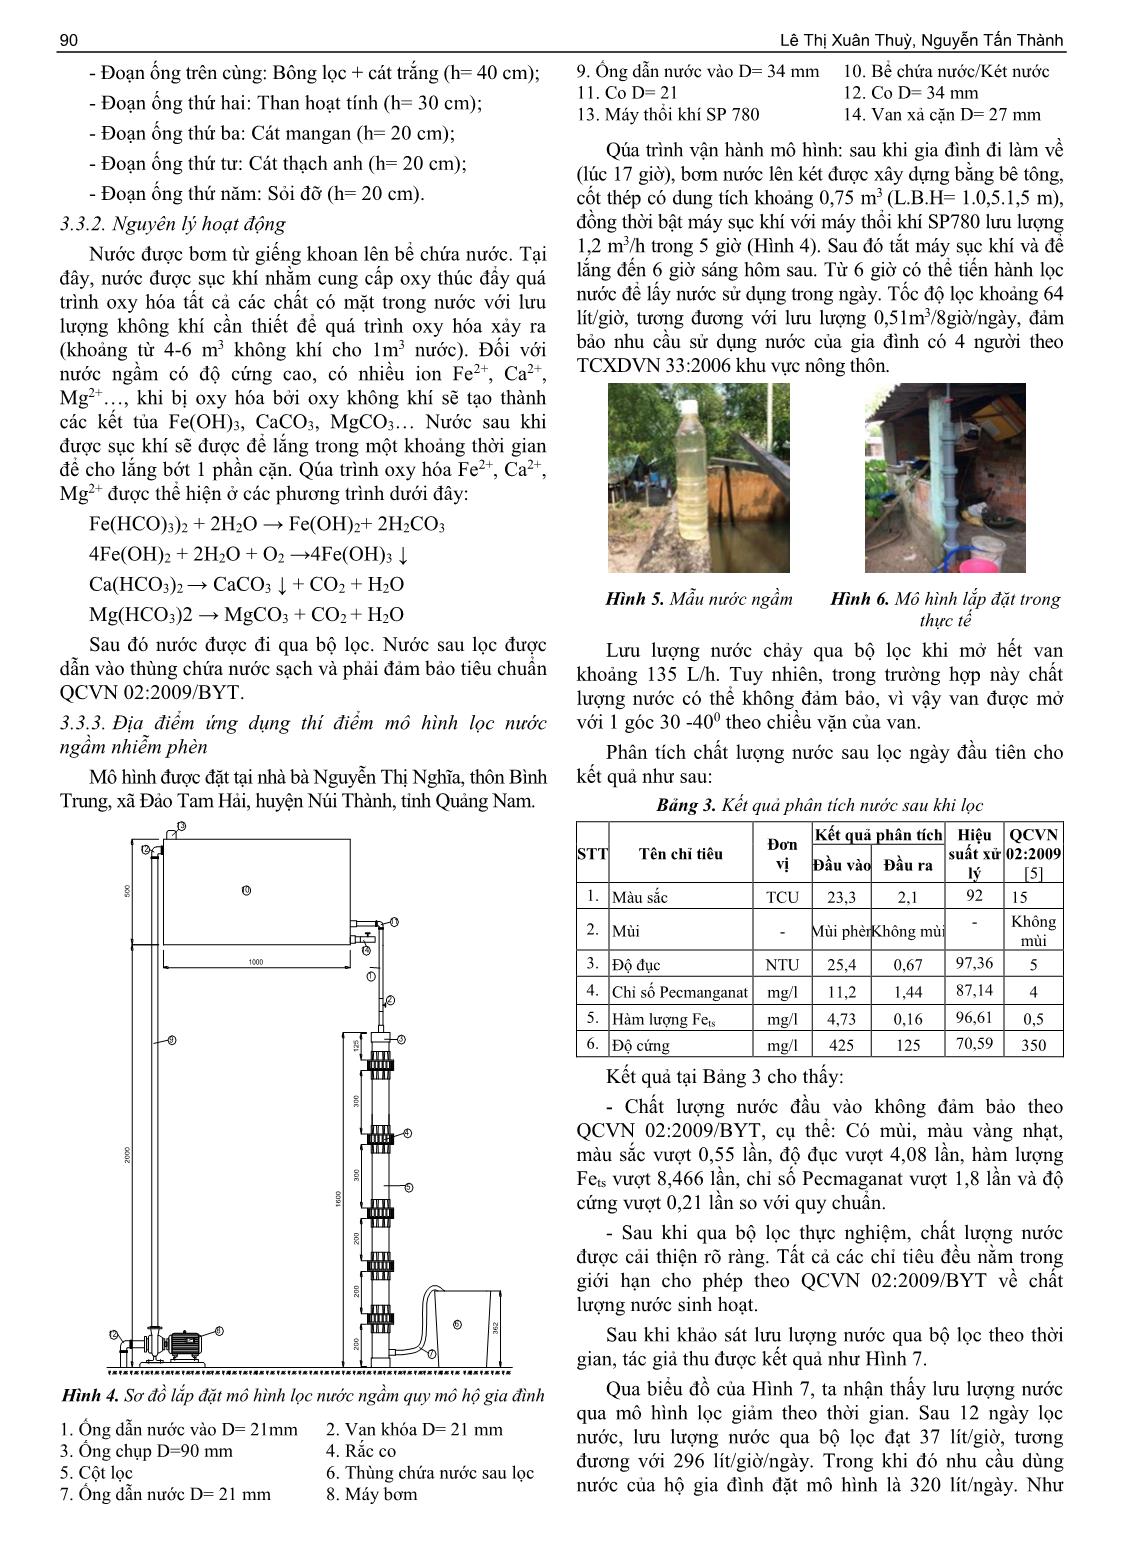 Đánh giá hiện trạng chất lượng nước ngầm và đề xuất giải pháp xử lý nước ngầm tại đảo Tam Hải, huyện Núi Thành, tỉnh Quảng Nam trang 4